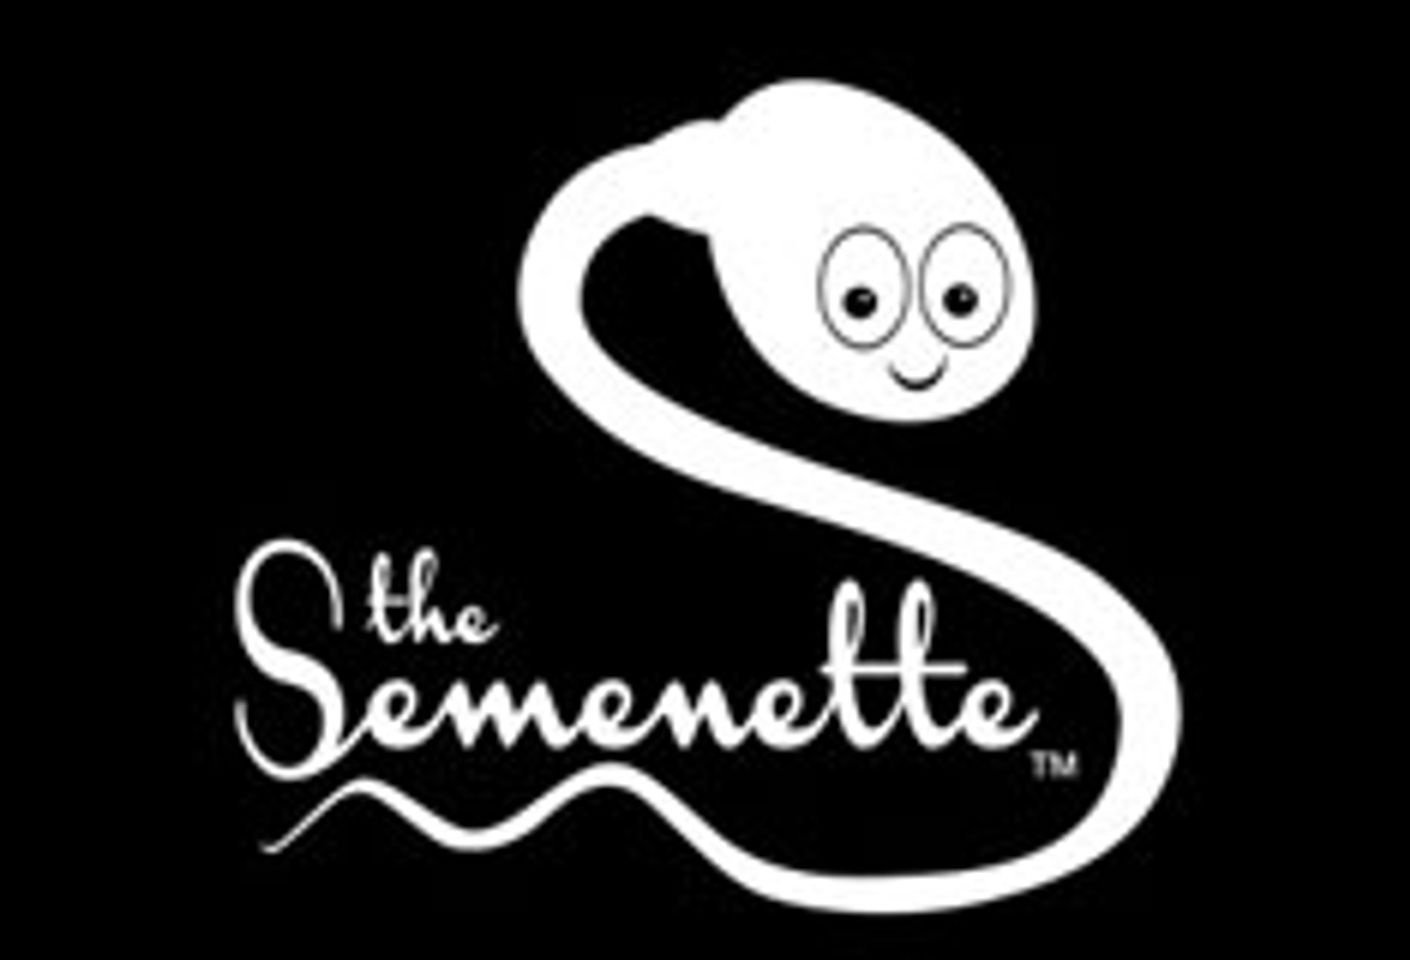 Semenette Named Sponsor of 10th Annual Feminist Porn Awards